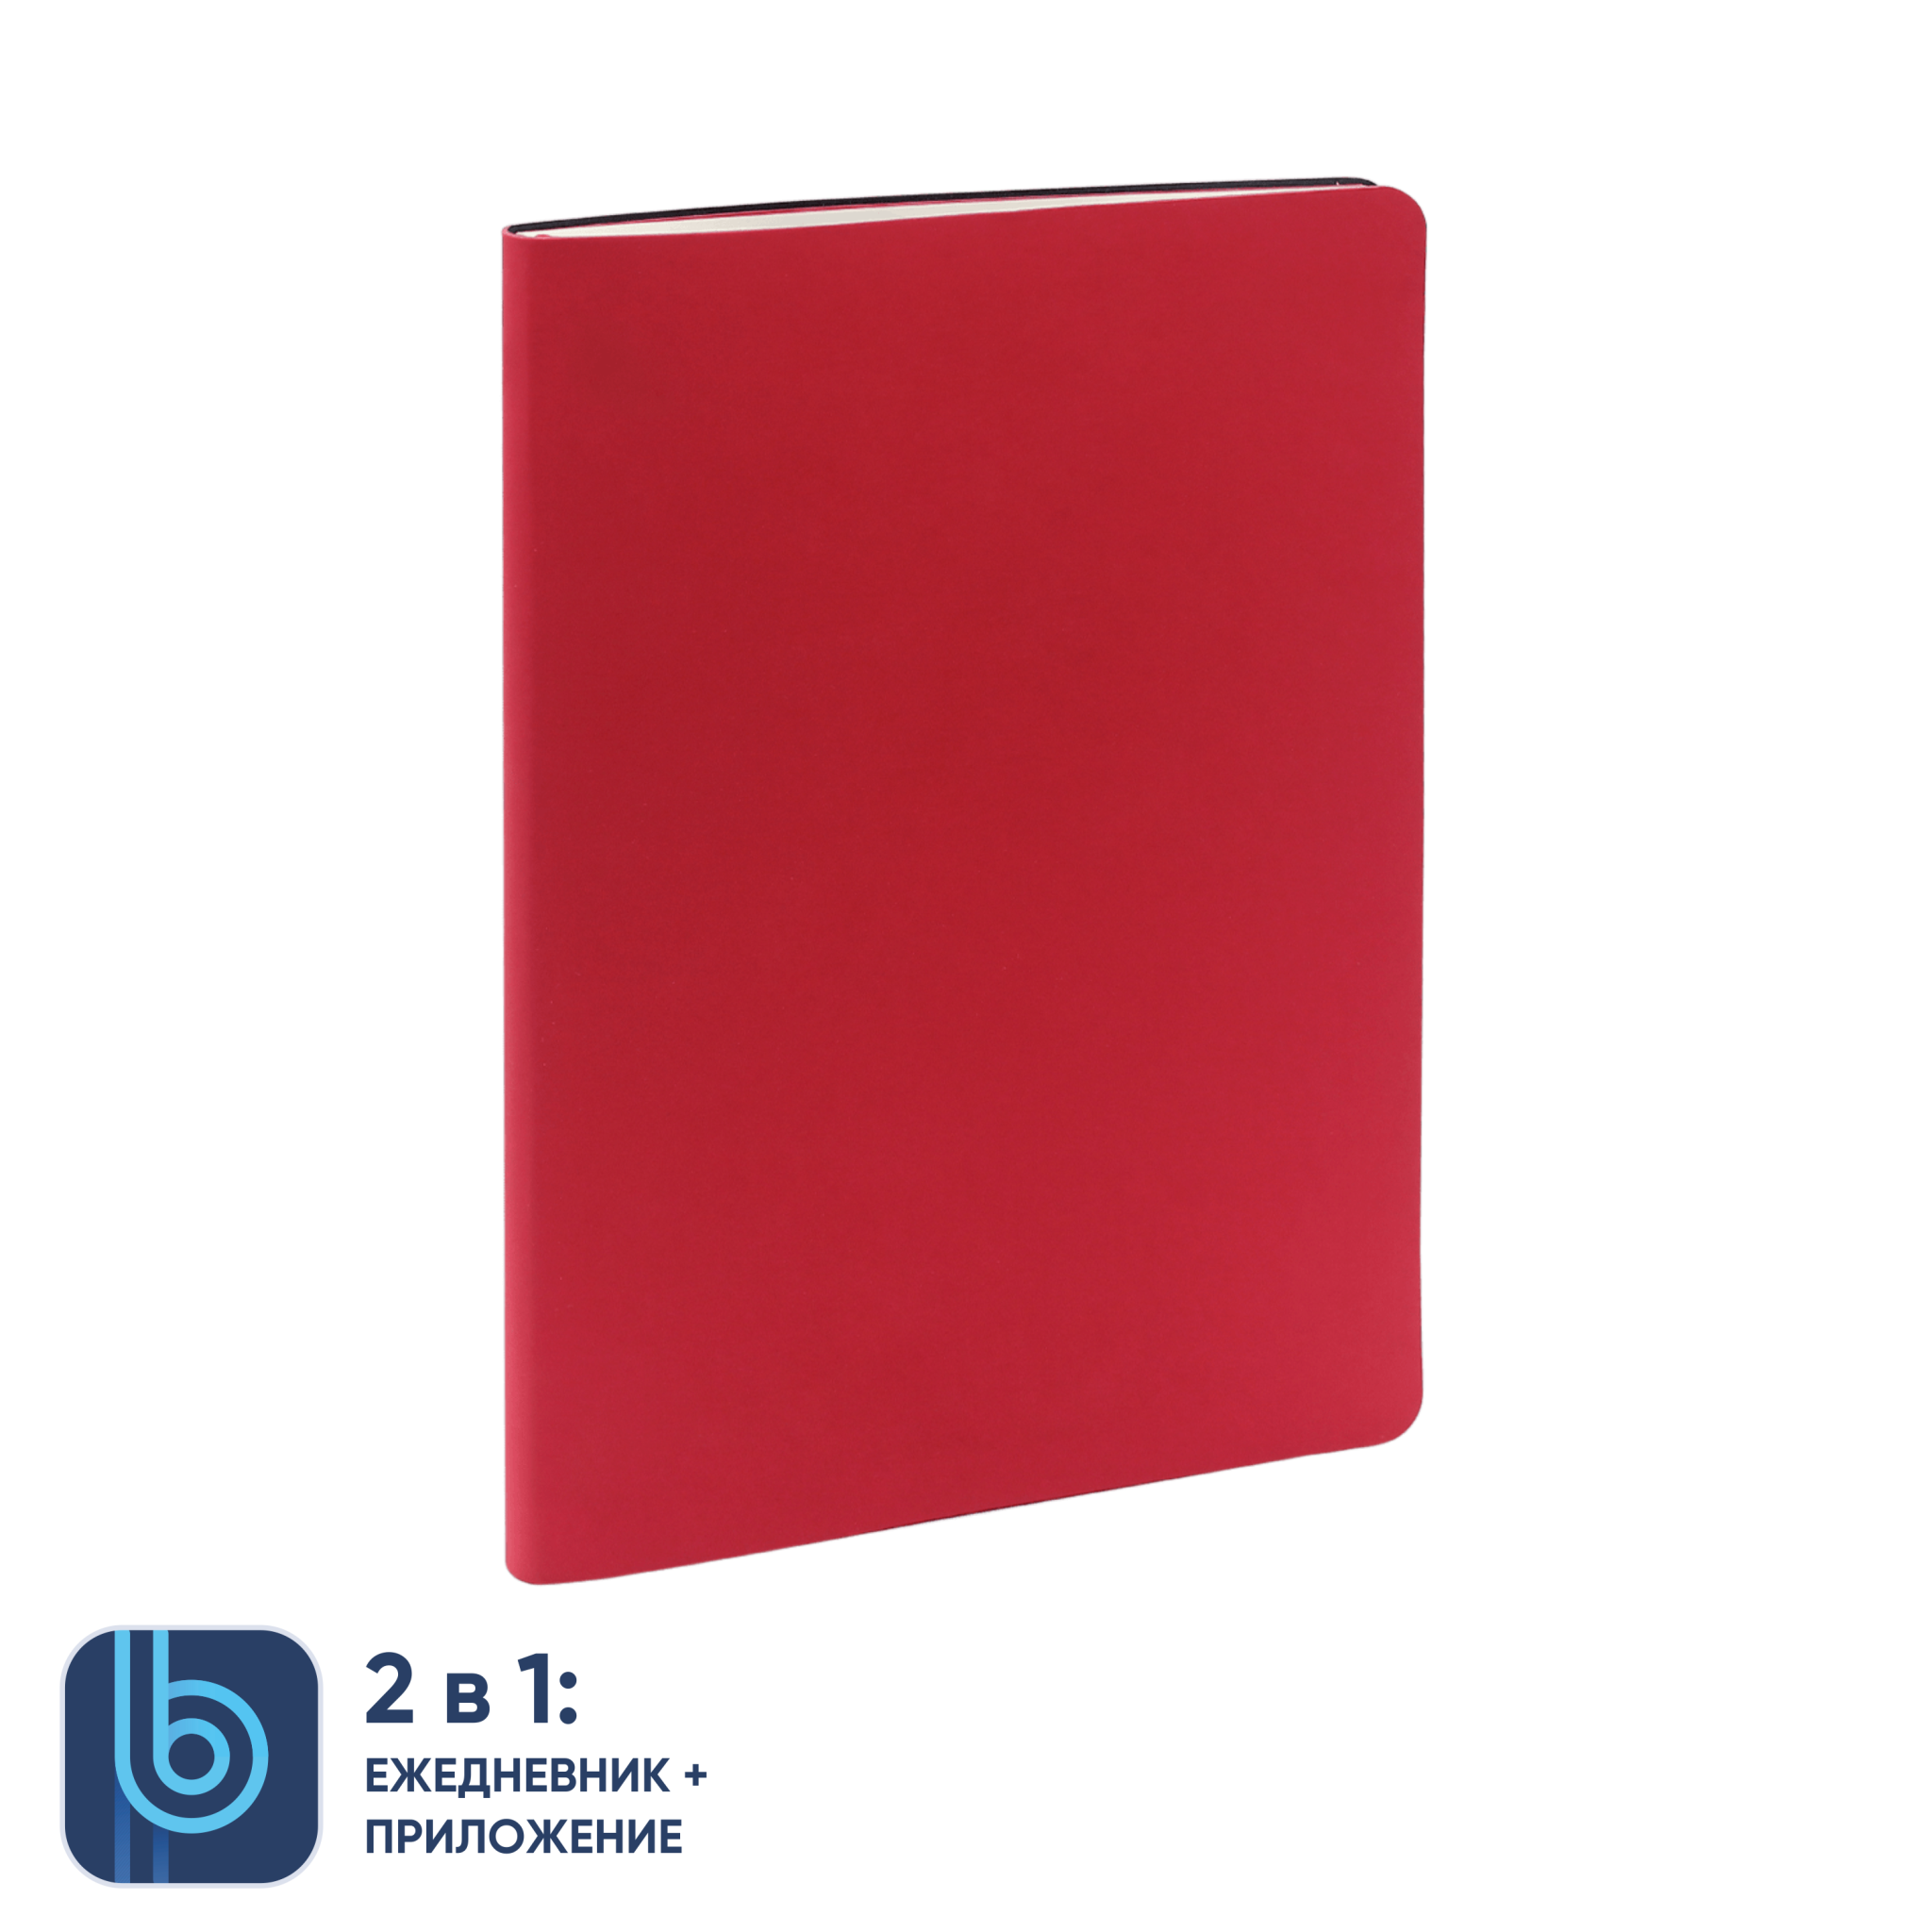 Ежедневник Bplanner.01 red (красный), красный, картон